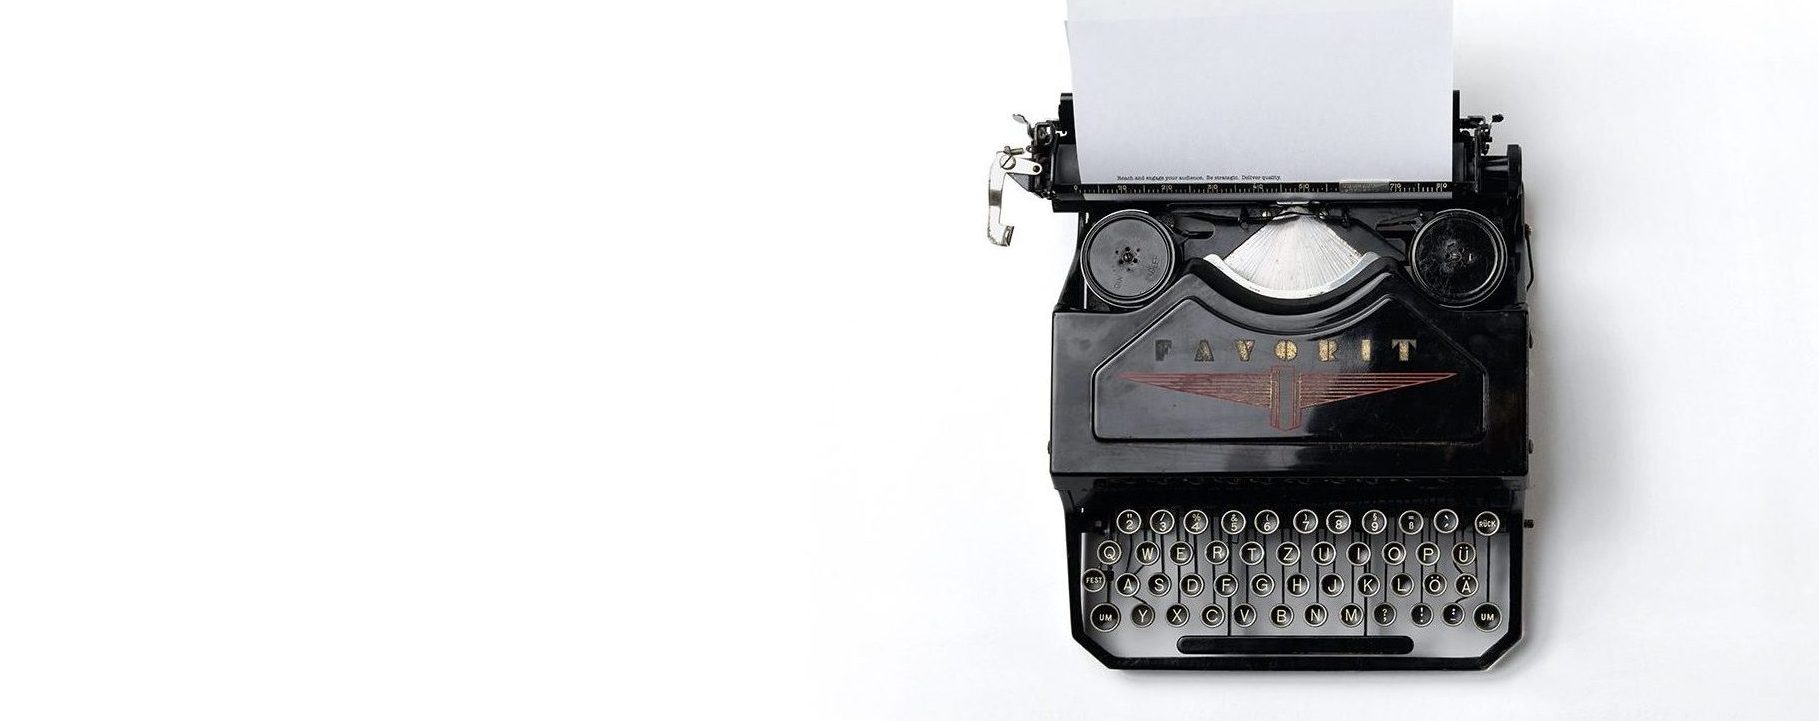 Retro black typewriter